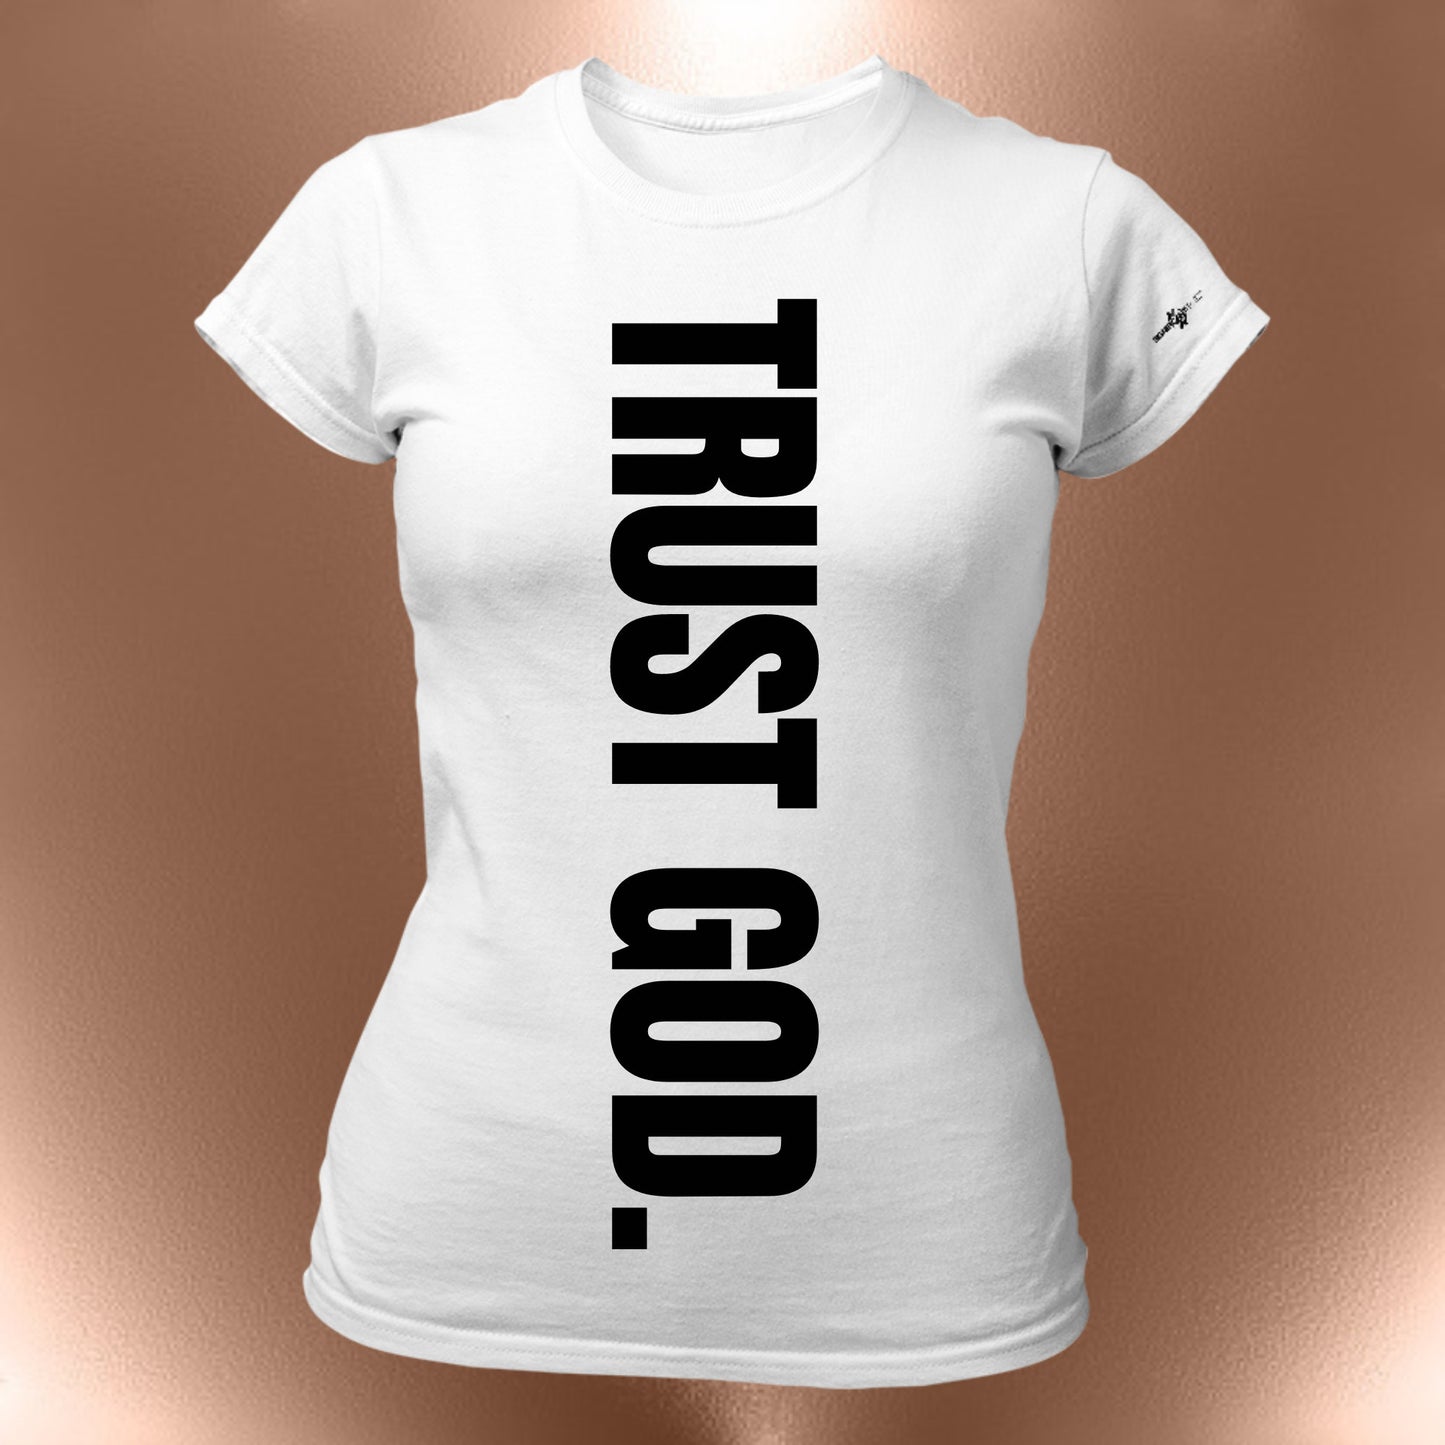 Trust God Tee